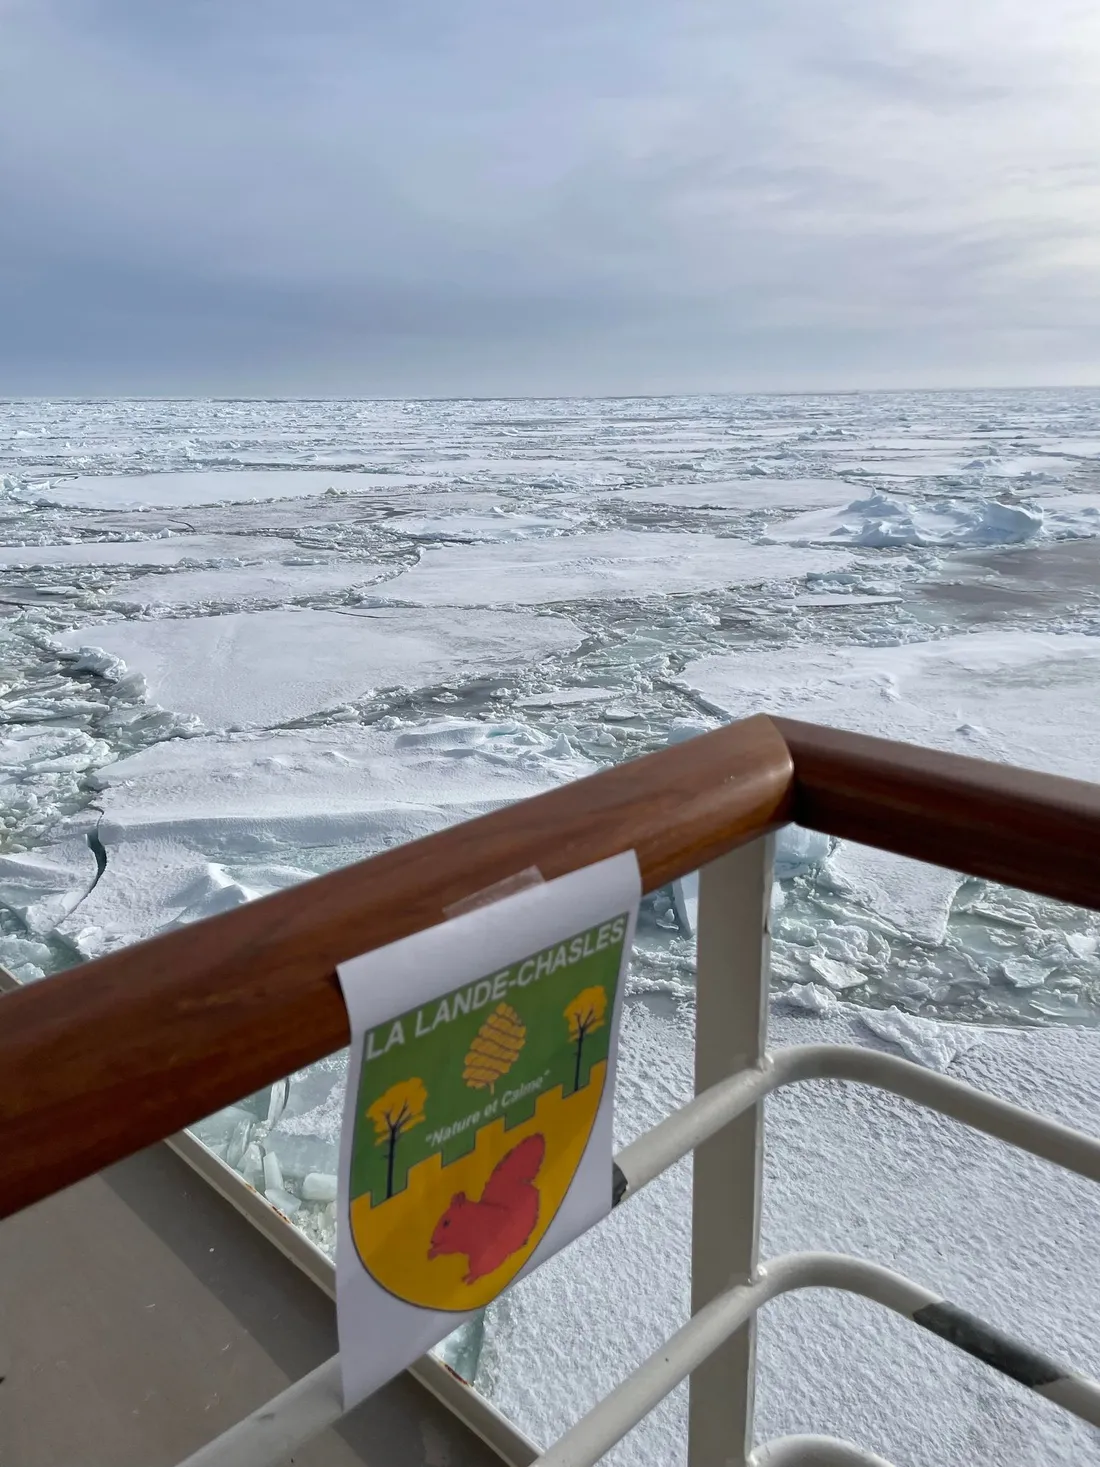 Blason de La Lande-Chasles sur le "Commandant Charcot" en Antarctique